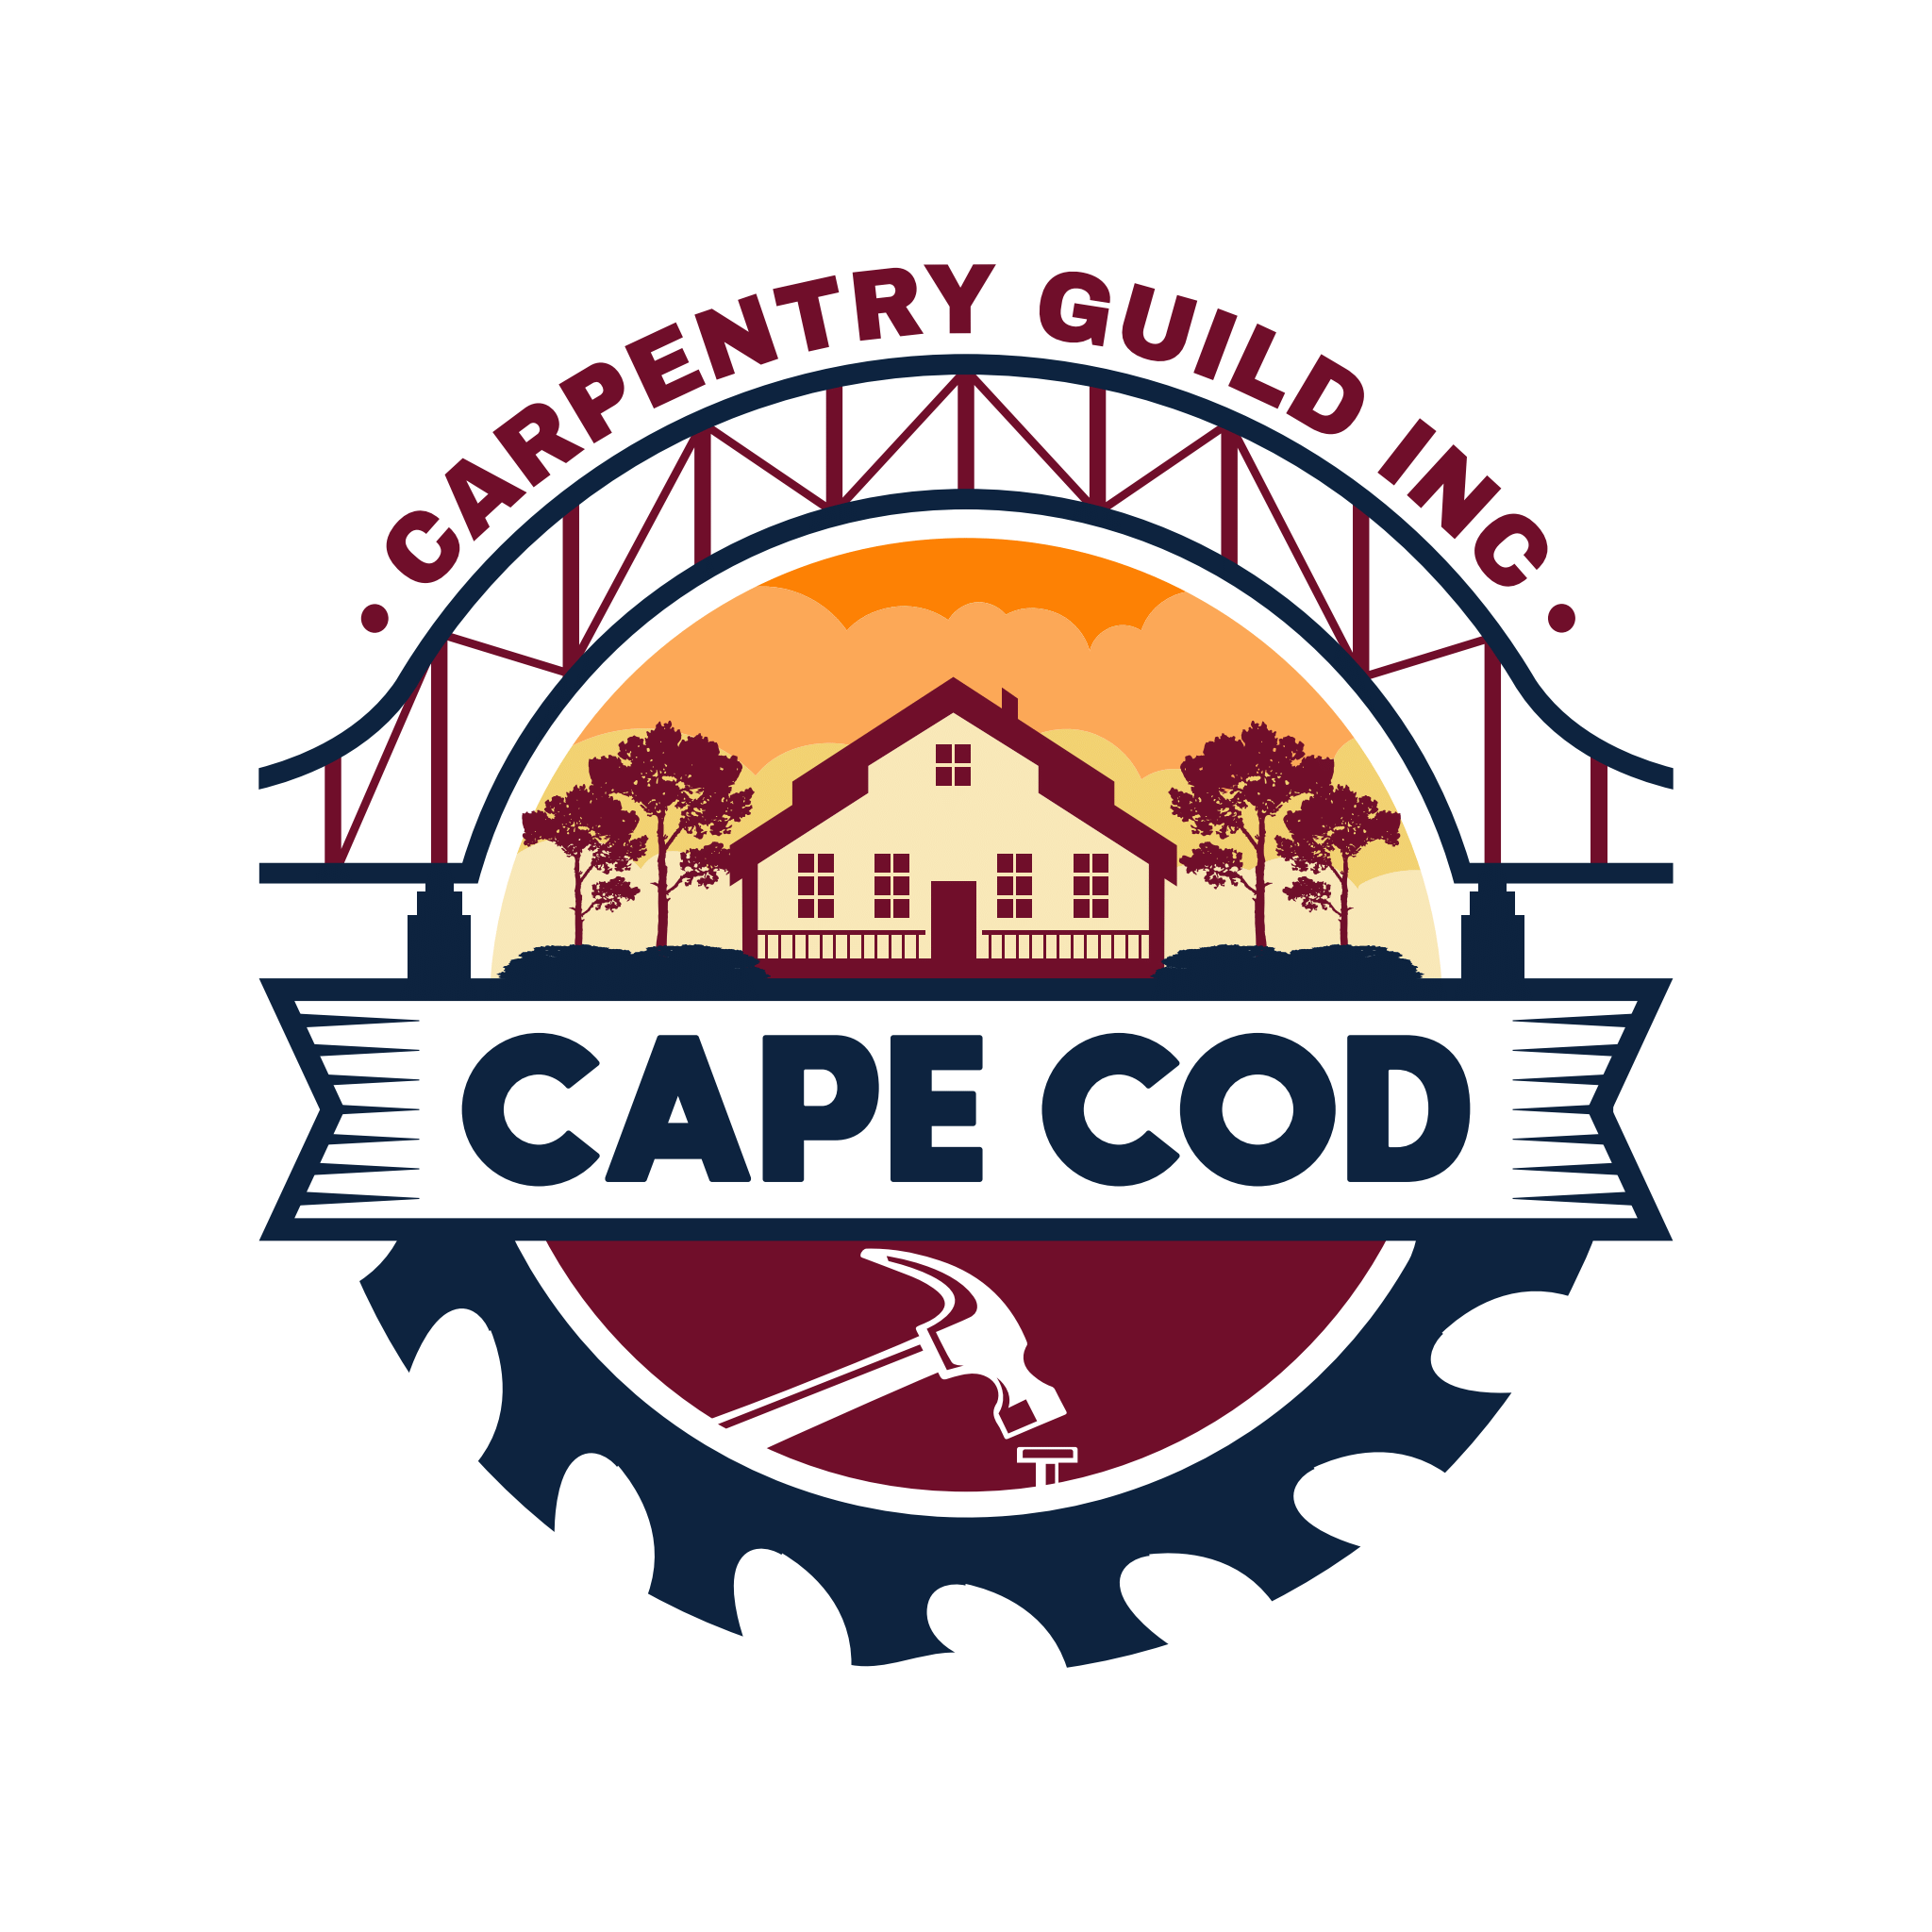 Cape Cod Carpentry Guild Logo